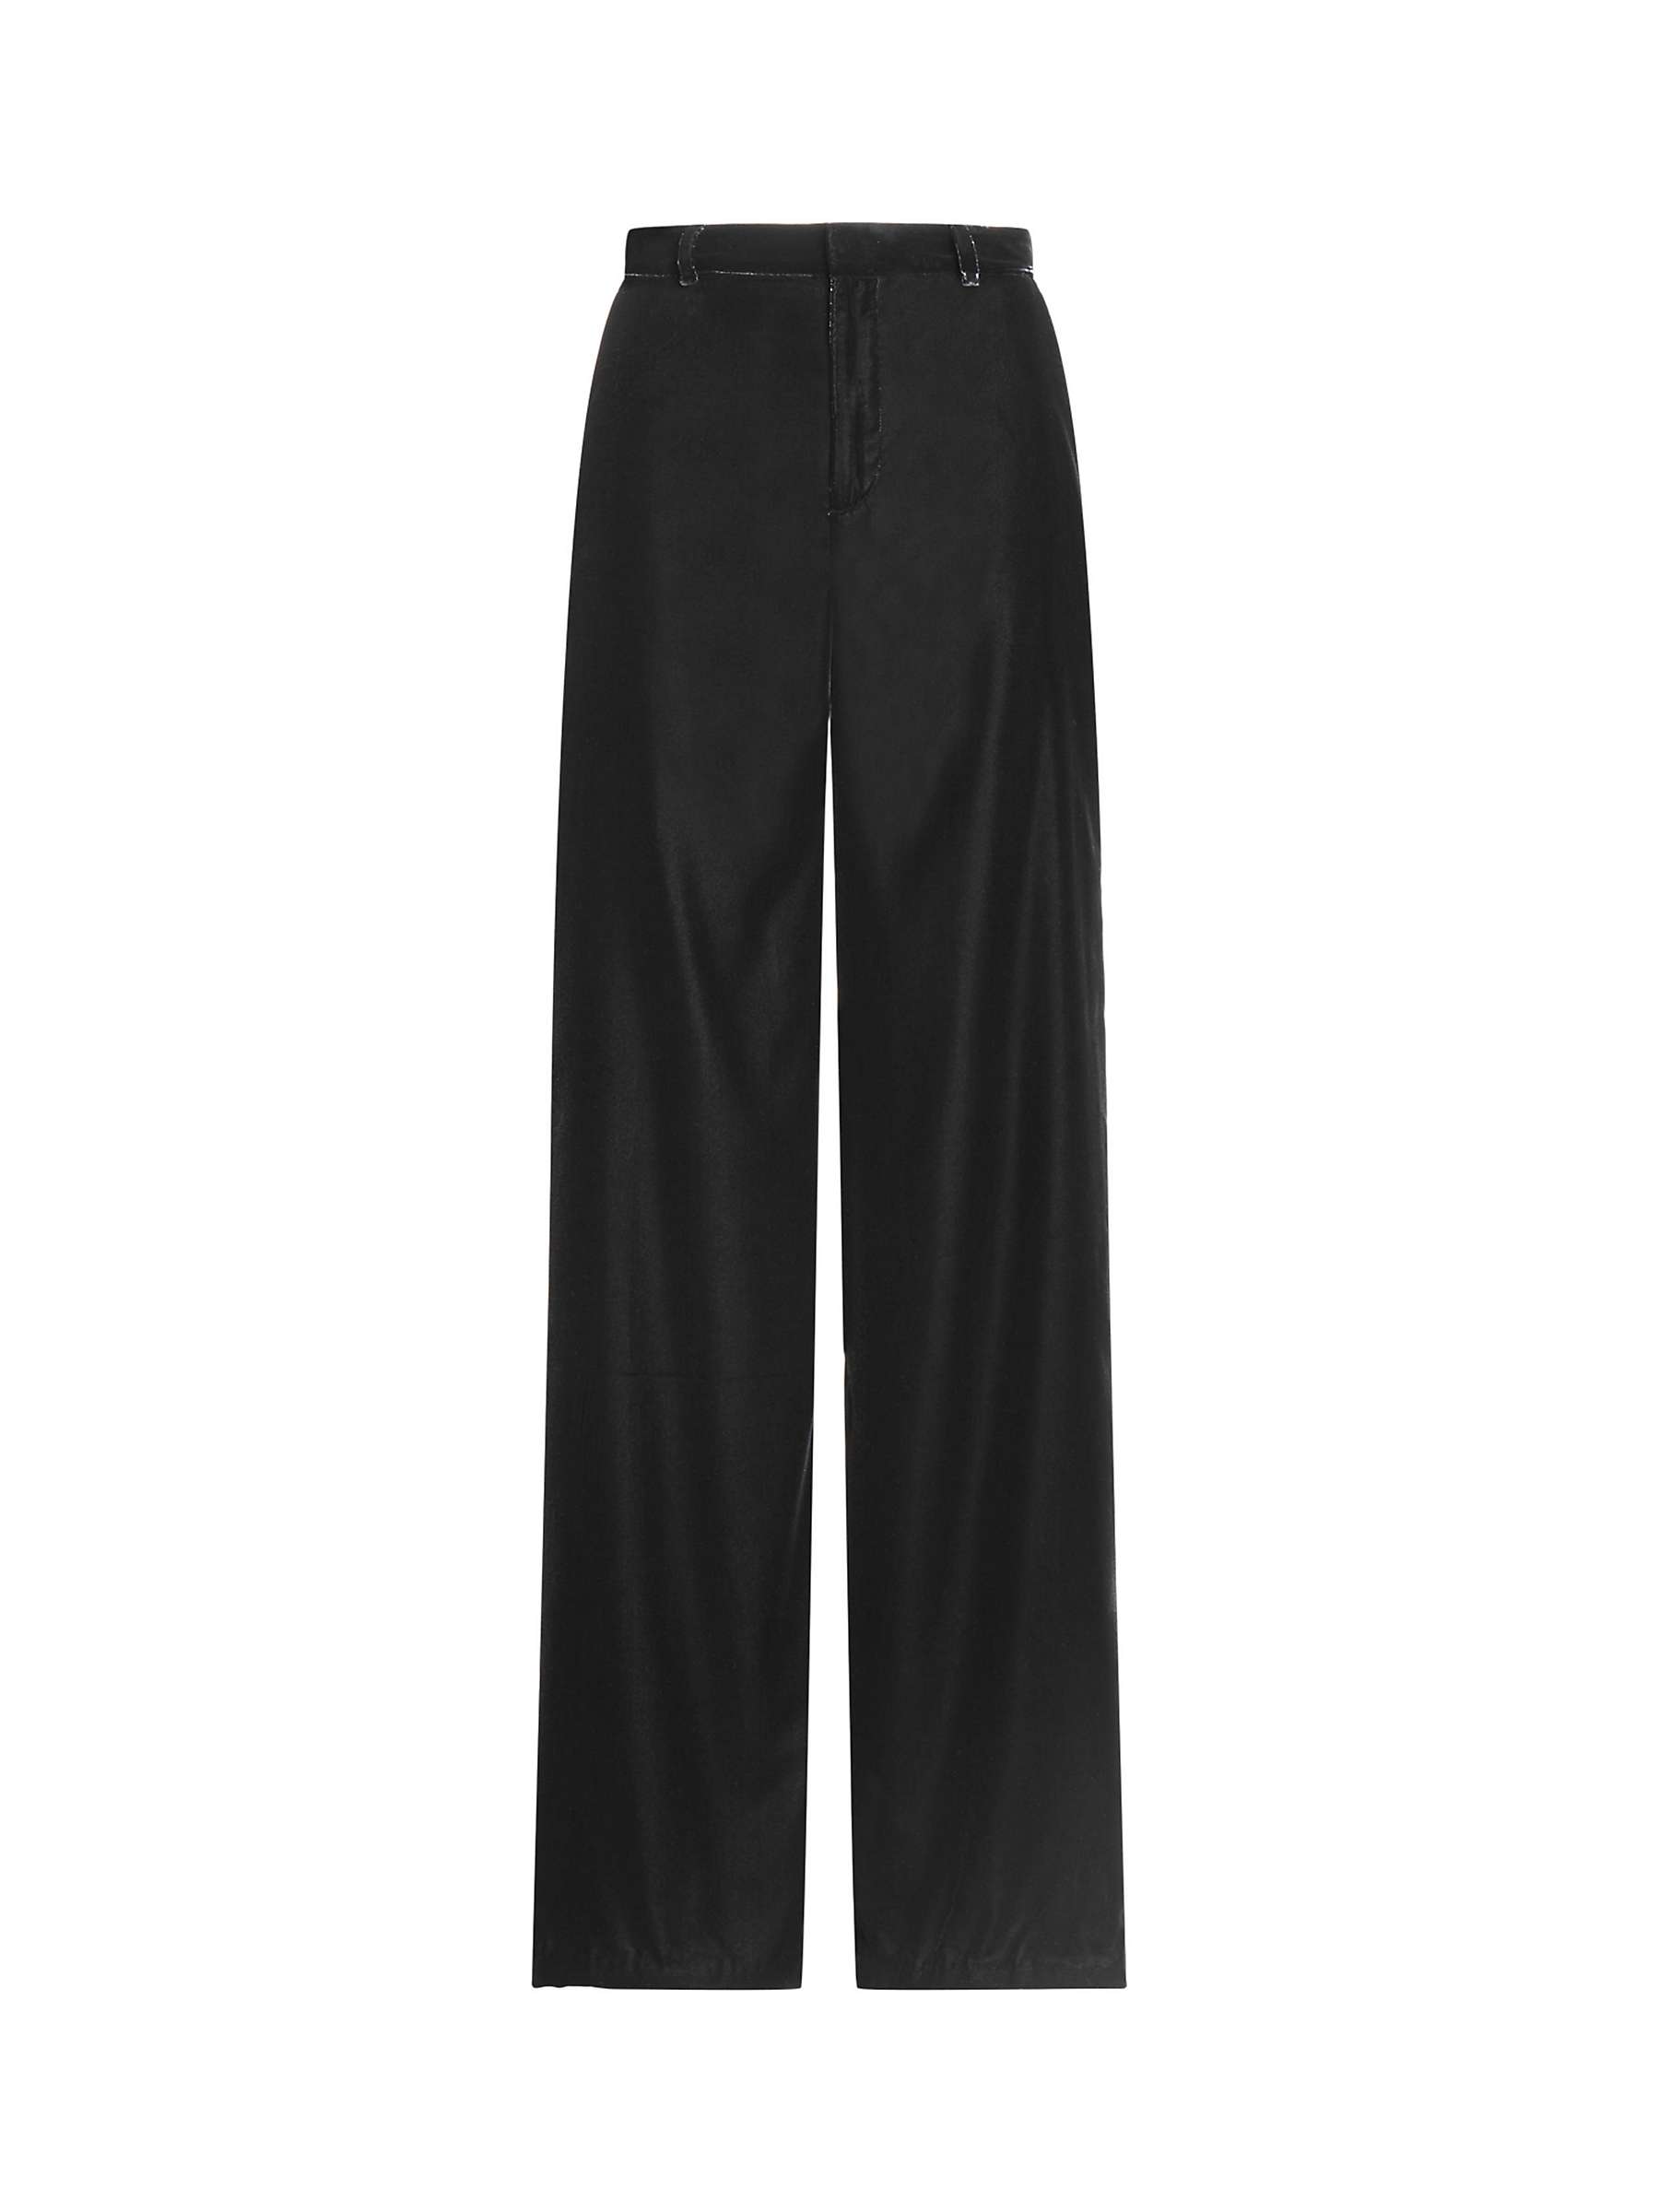 Buy Lauren Ralph Lauren Jinjay Velvet Trousers, Black Online at johnlewis.com